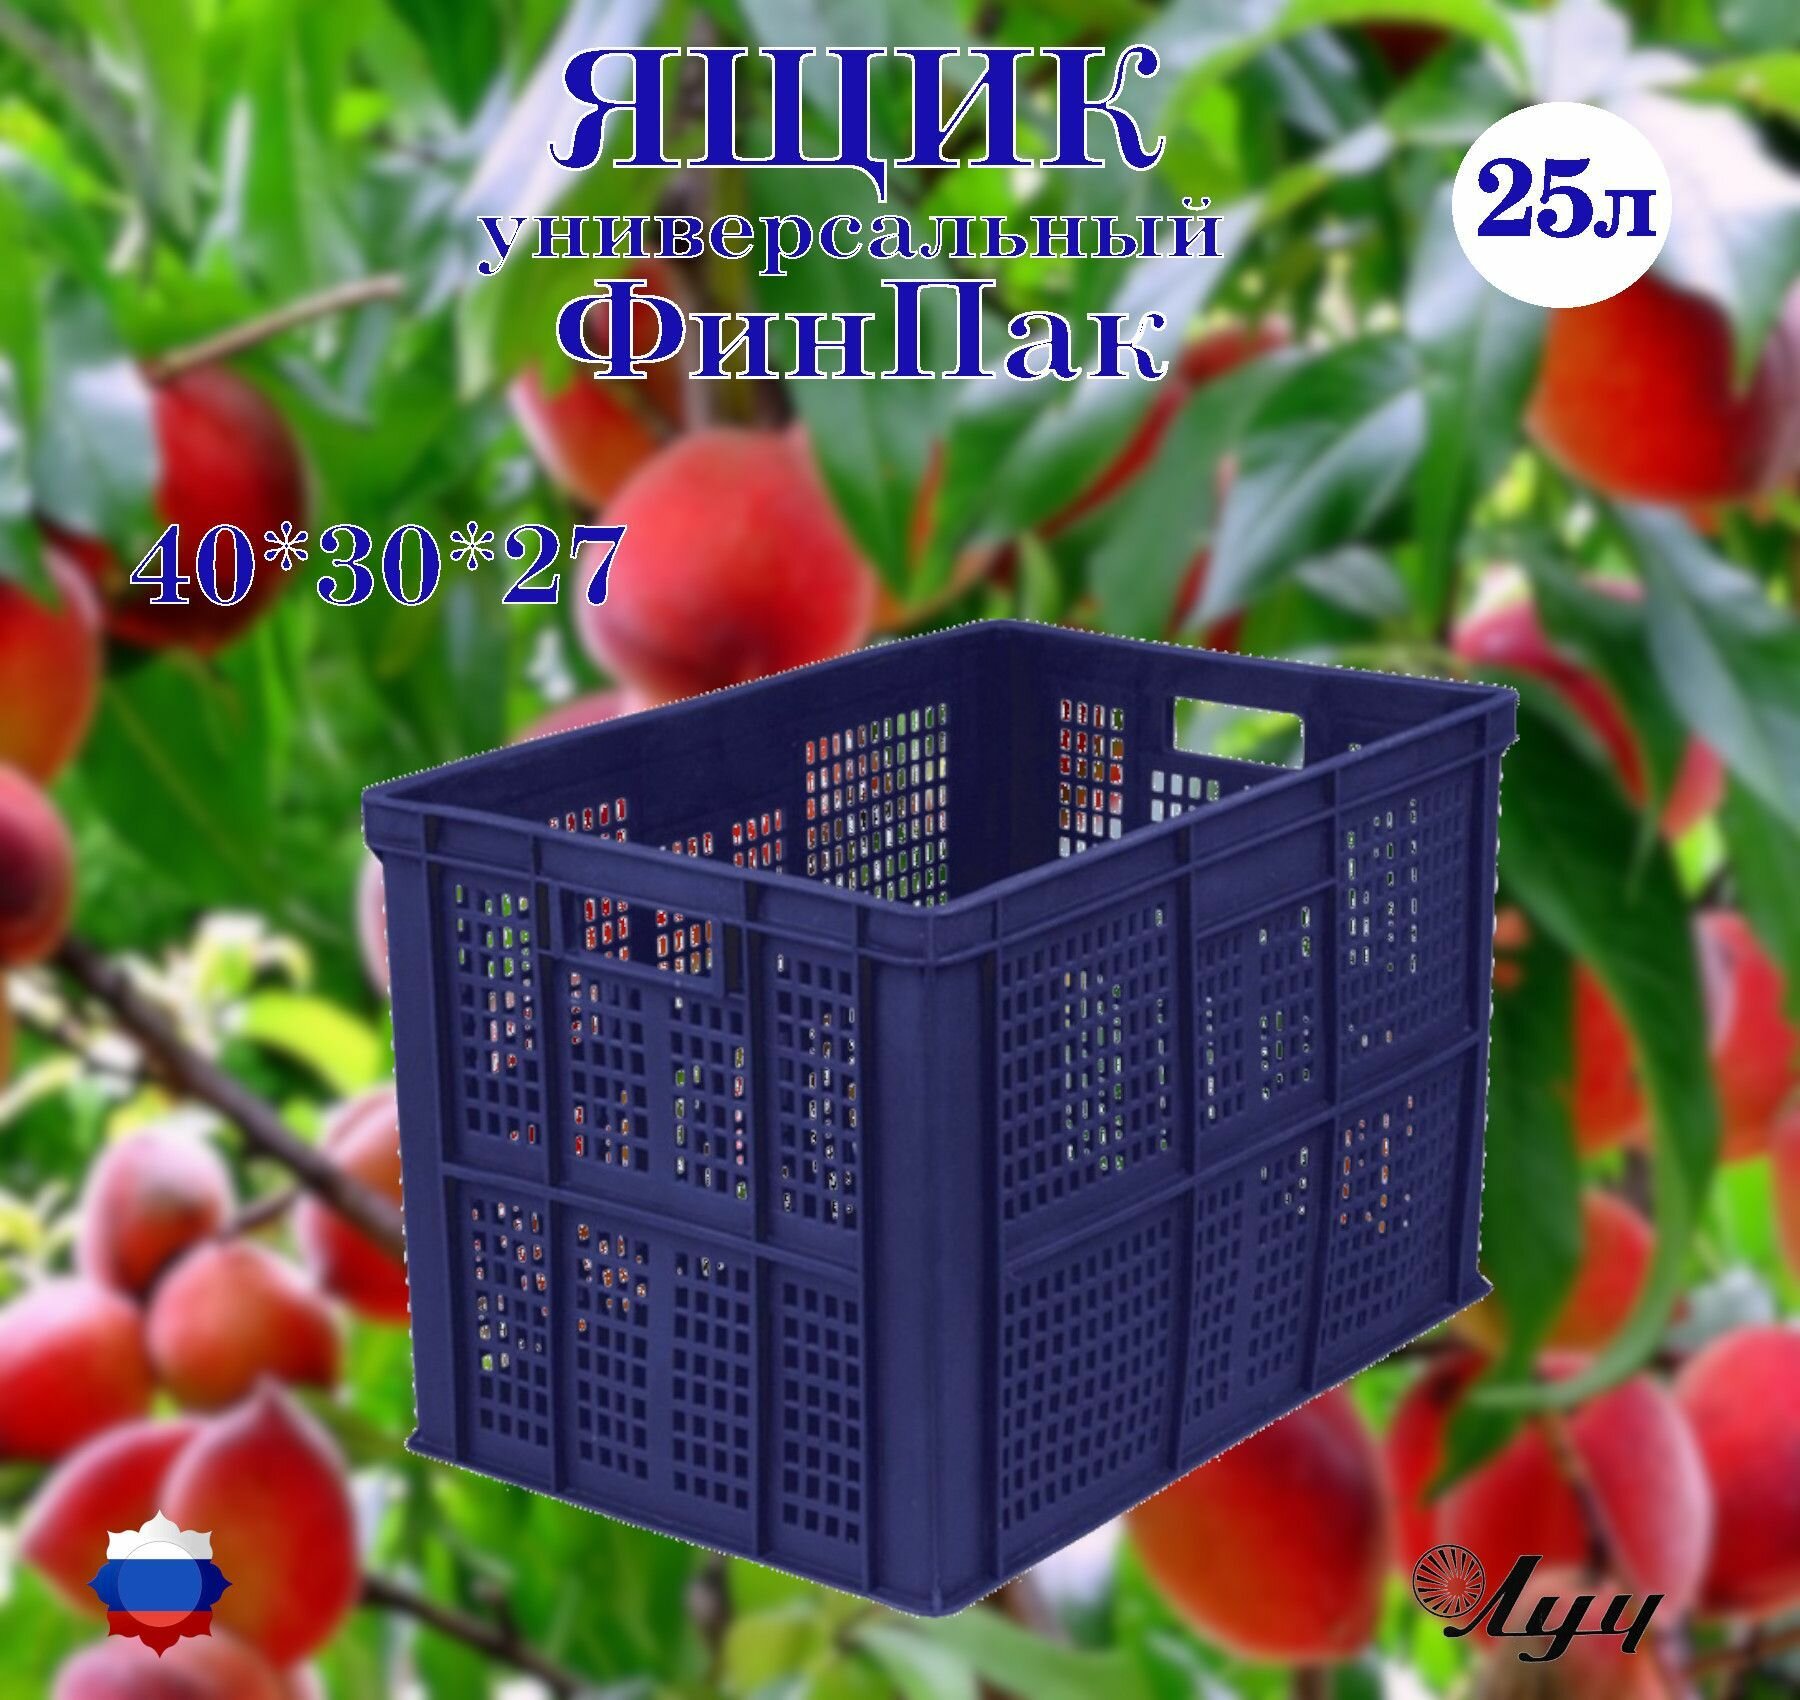 Ящик Финпак универсальный, частично перфорированный, штабелируемый 400*300*263мм для хранения и транспортировки овощей, фруктов, мясной и молочной продукции